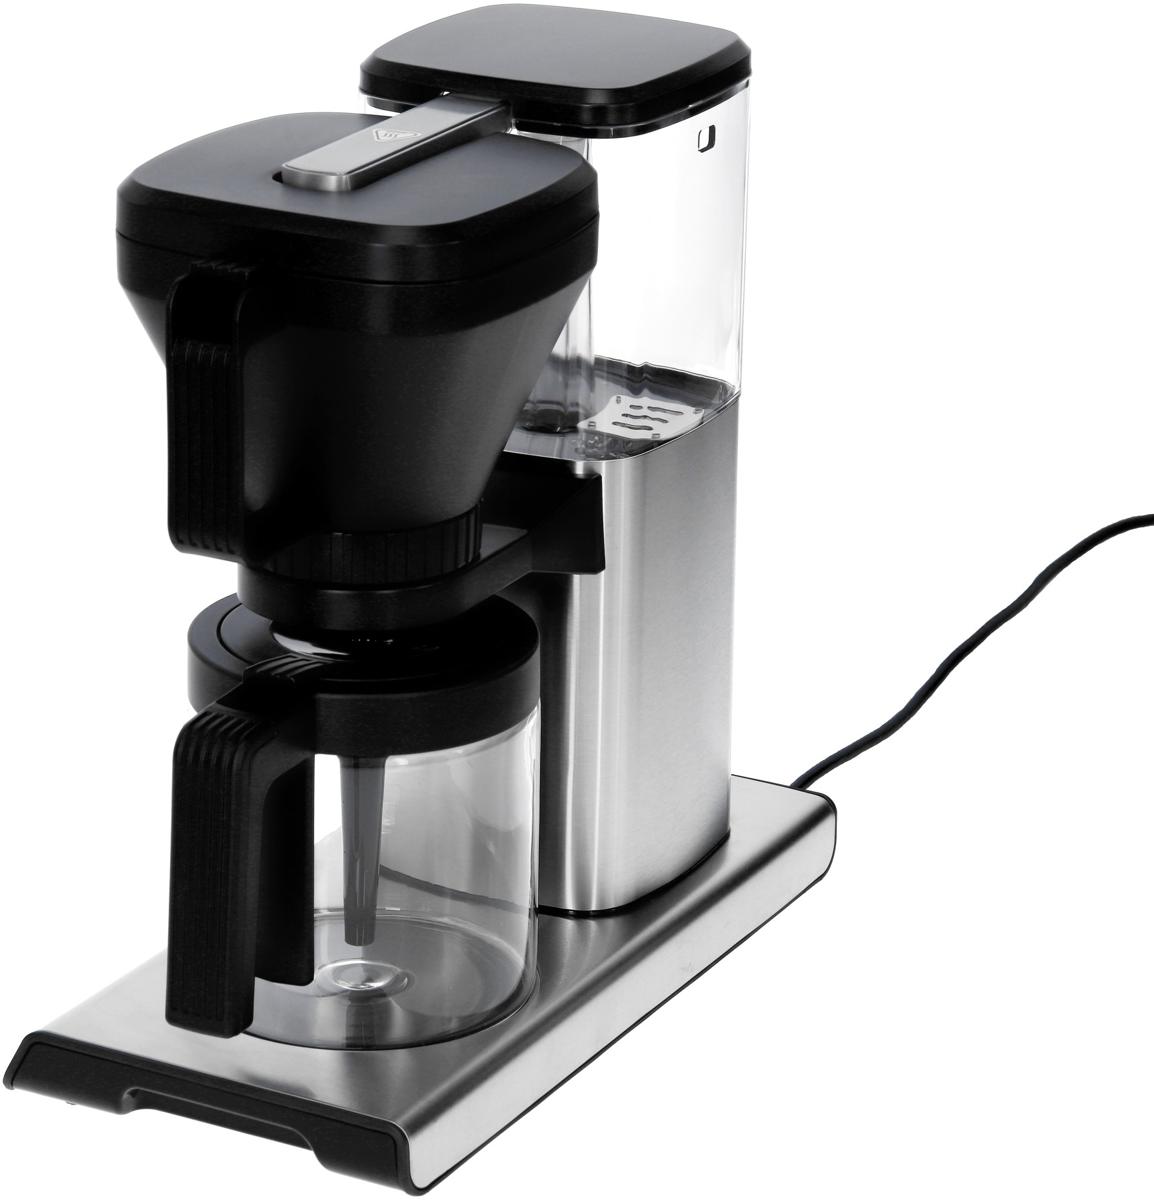 Advanced, Design Wagner Tassen, Elektroshop edelstahl/schwarz Einzeltassenfunktion, 10 Filterkaffeemaschine, 42706 Gastroback Glaskanne, Brew